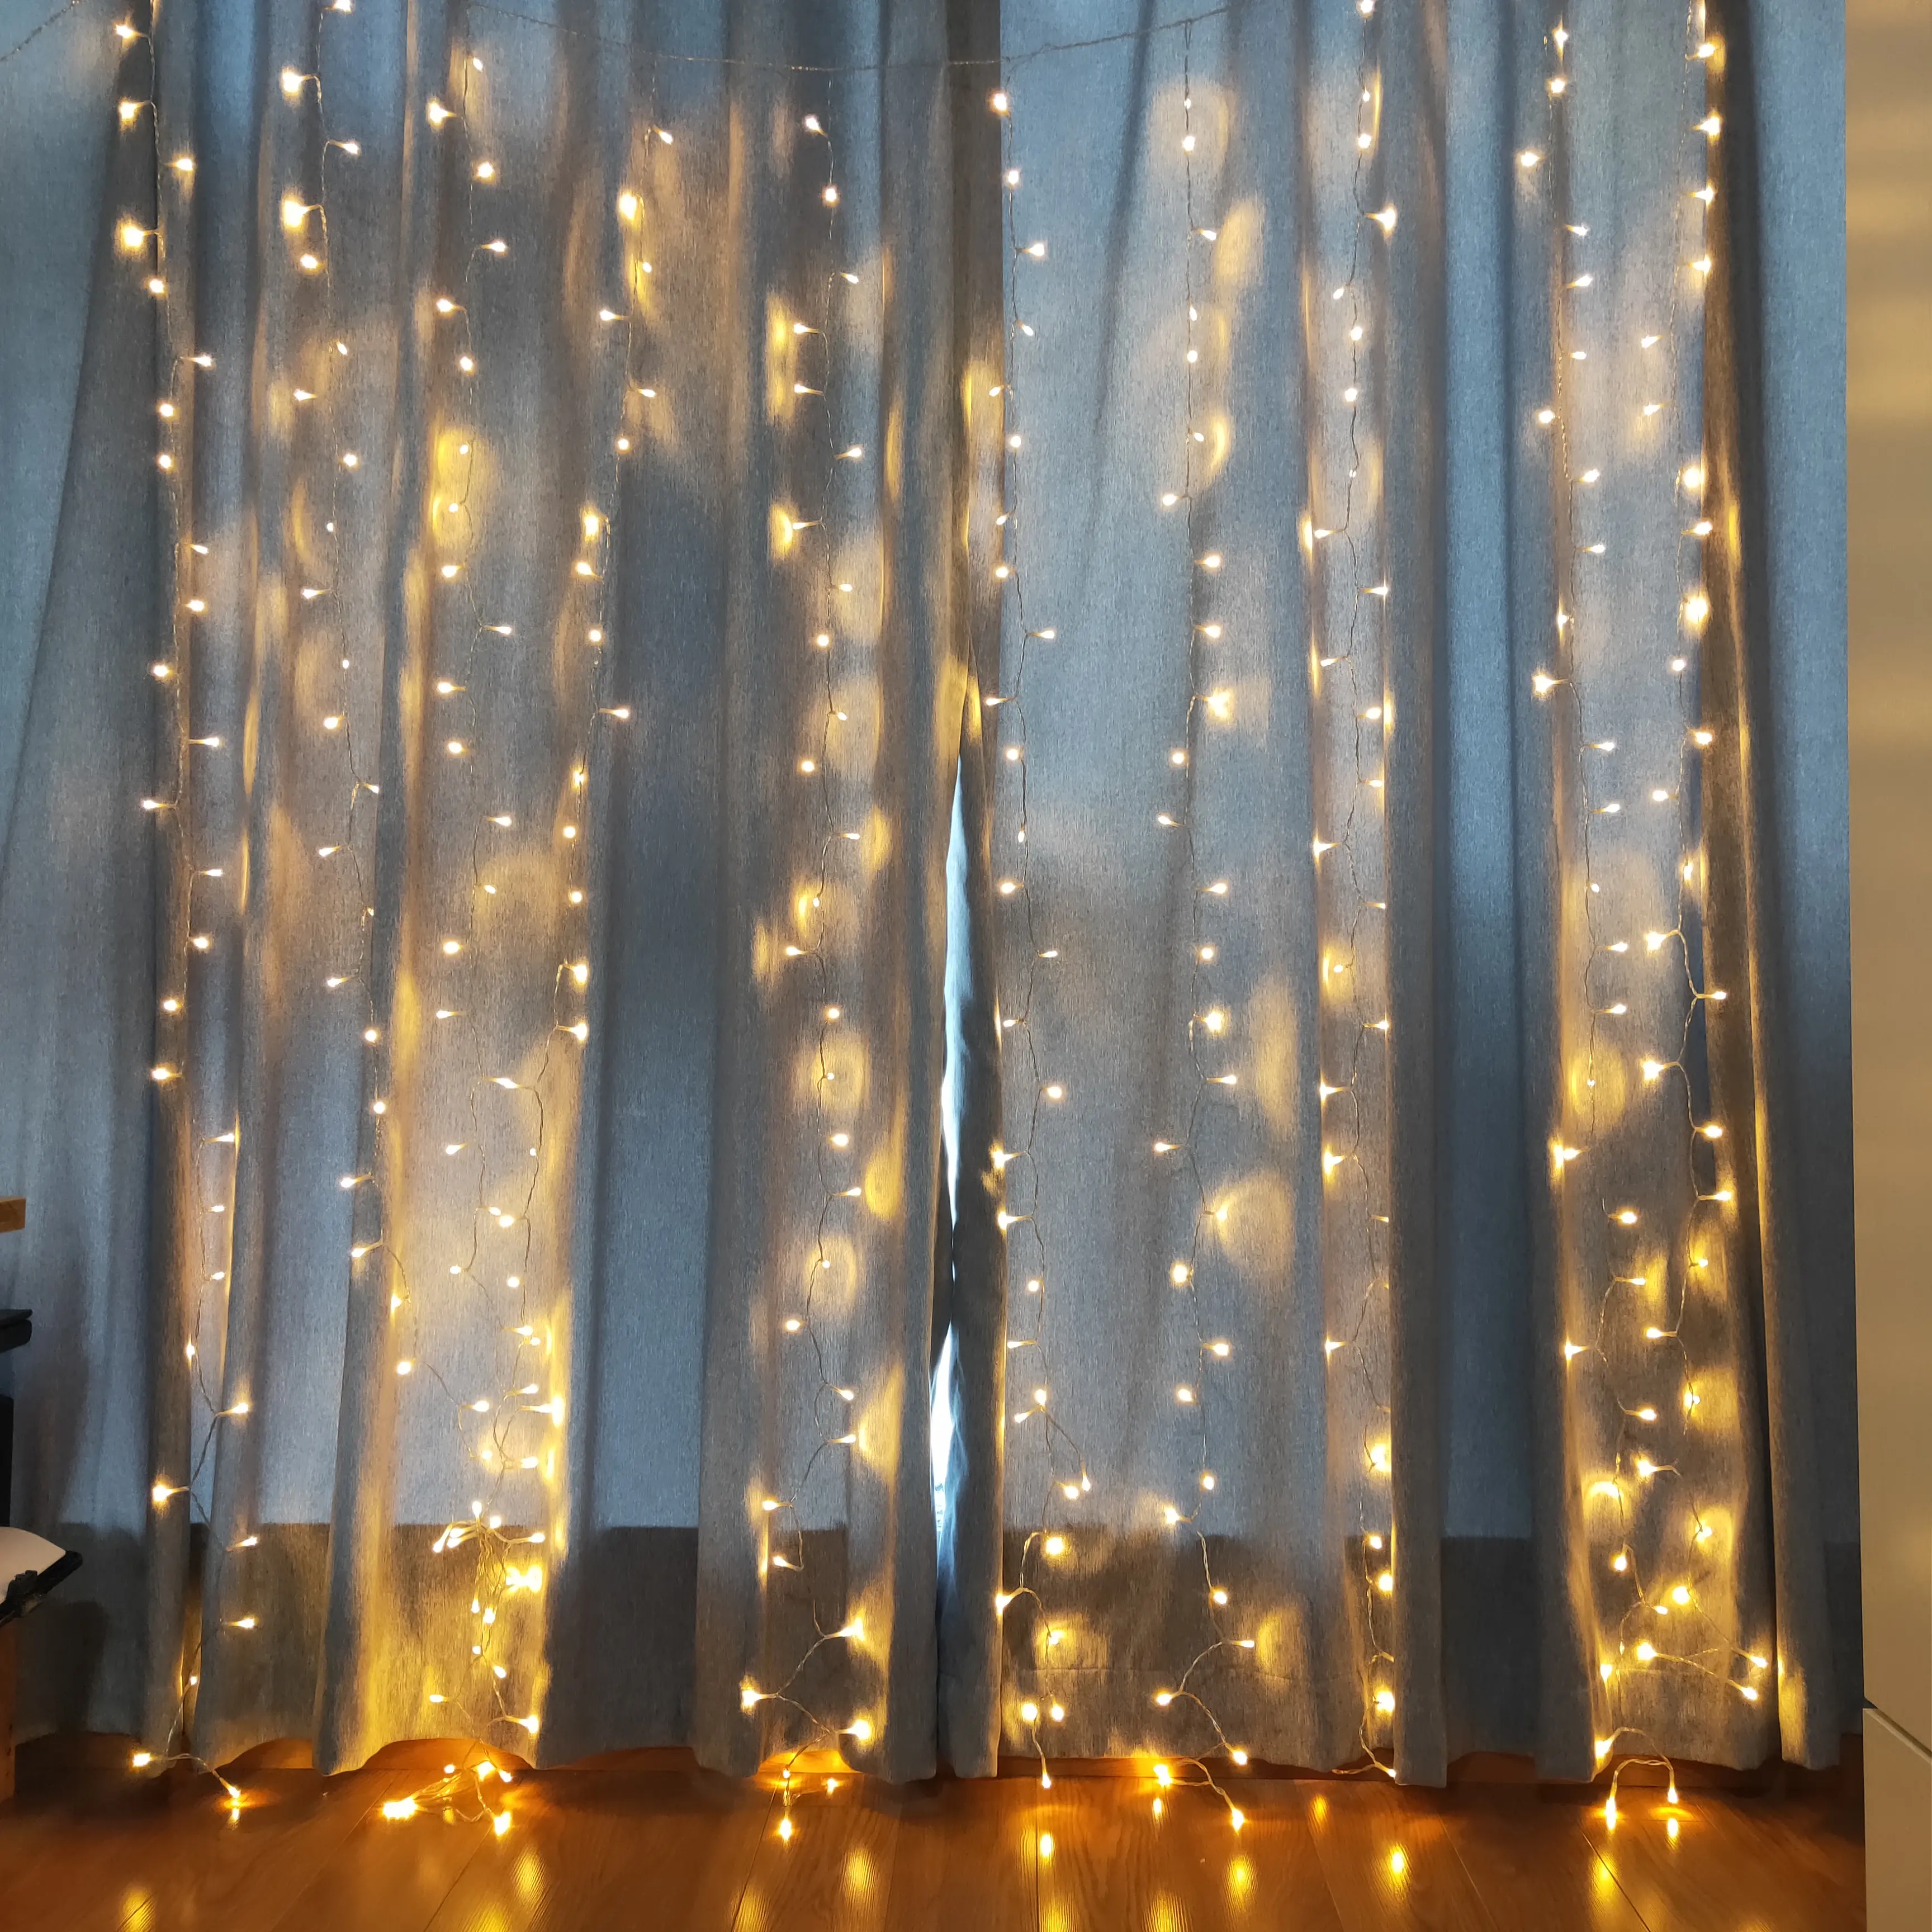 Niederspannung 6.6Ft * 7.8Ft 300 LED Weihnachts vorhang Lichter Fenster vorhang Dekorative Beleuchtung mit 8 Funktion Transparenter Draht